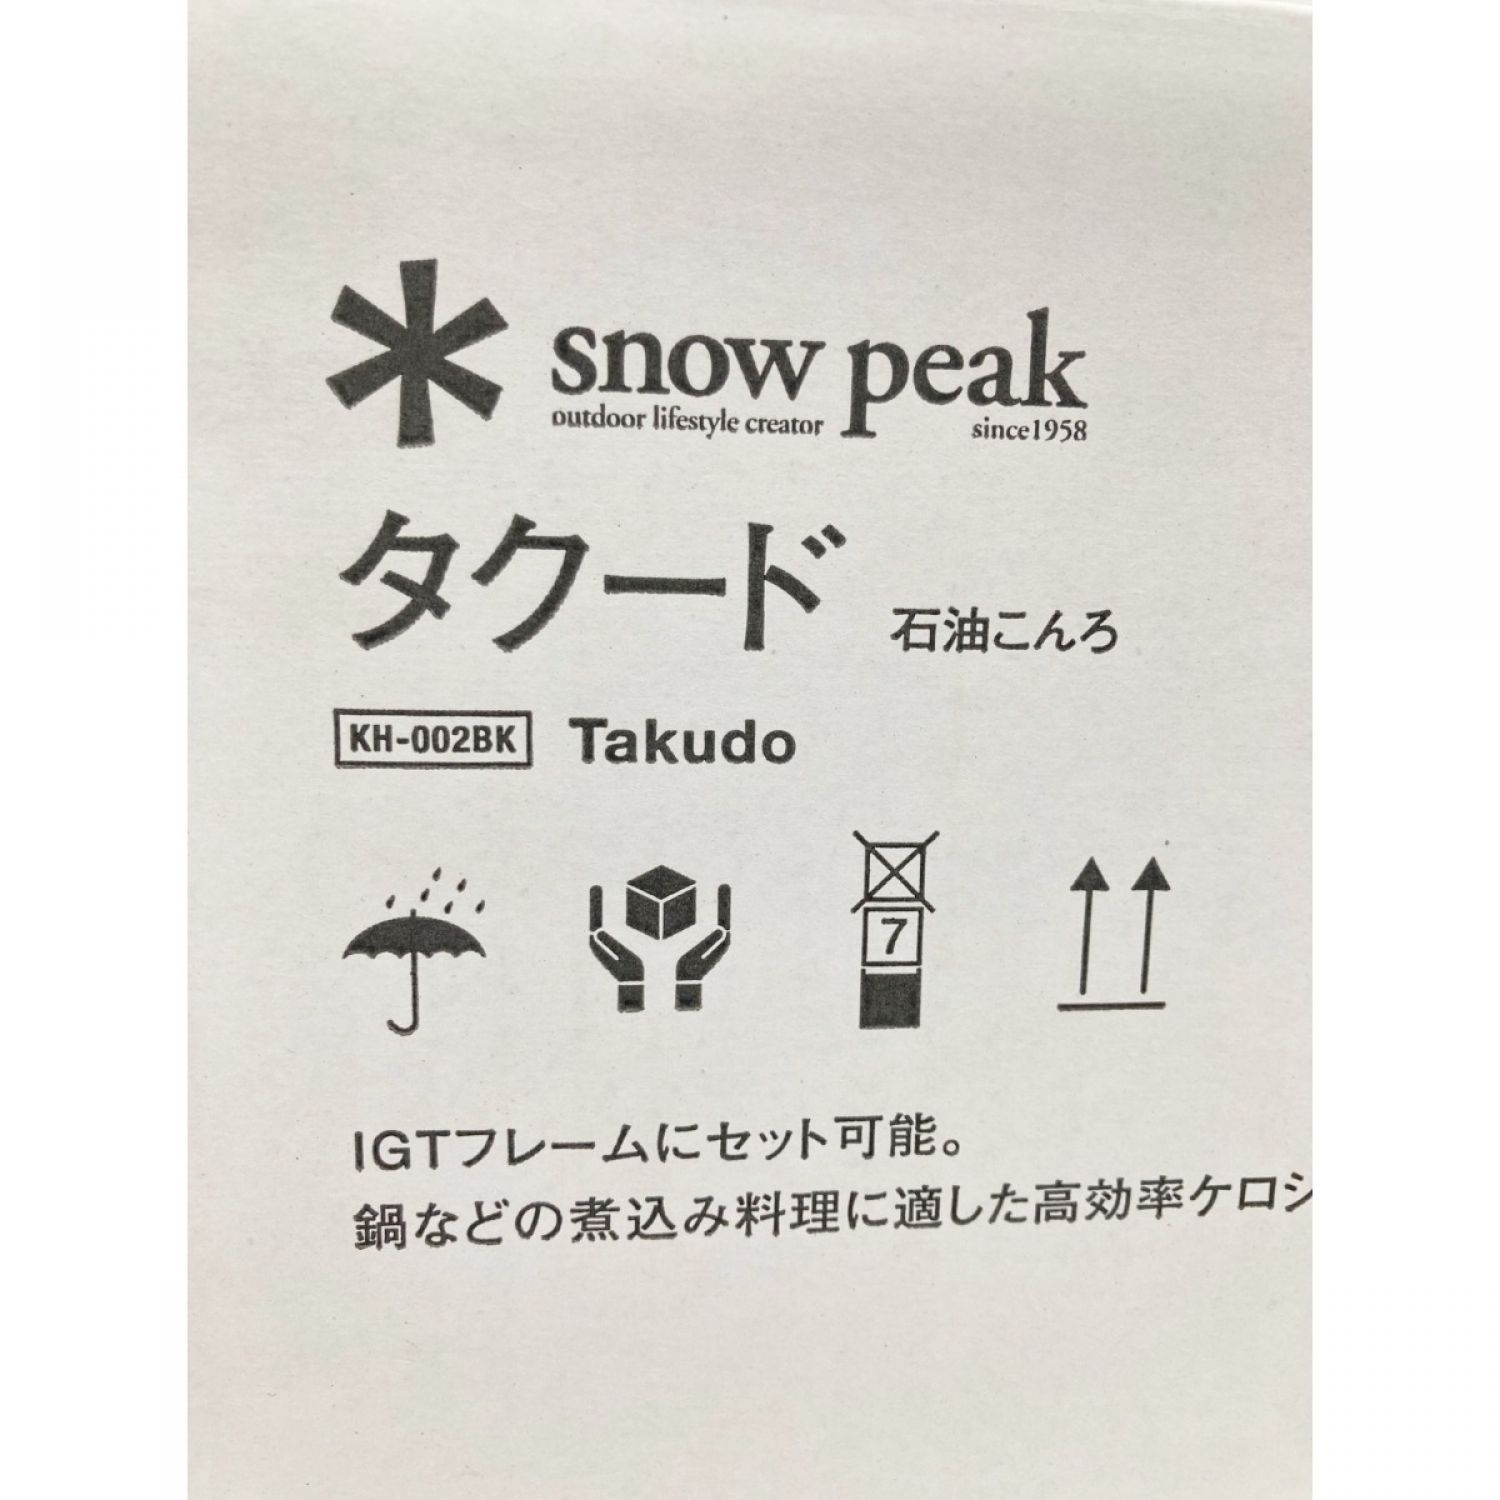 中古】 snowpeak スノーピーク タクード ストーブ KH-002BK 未開封品 N